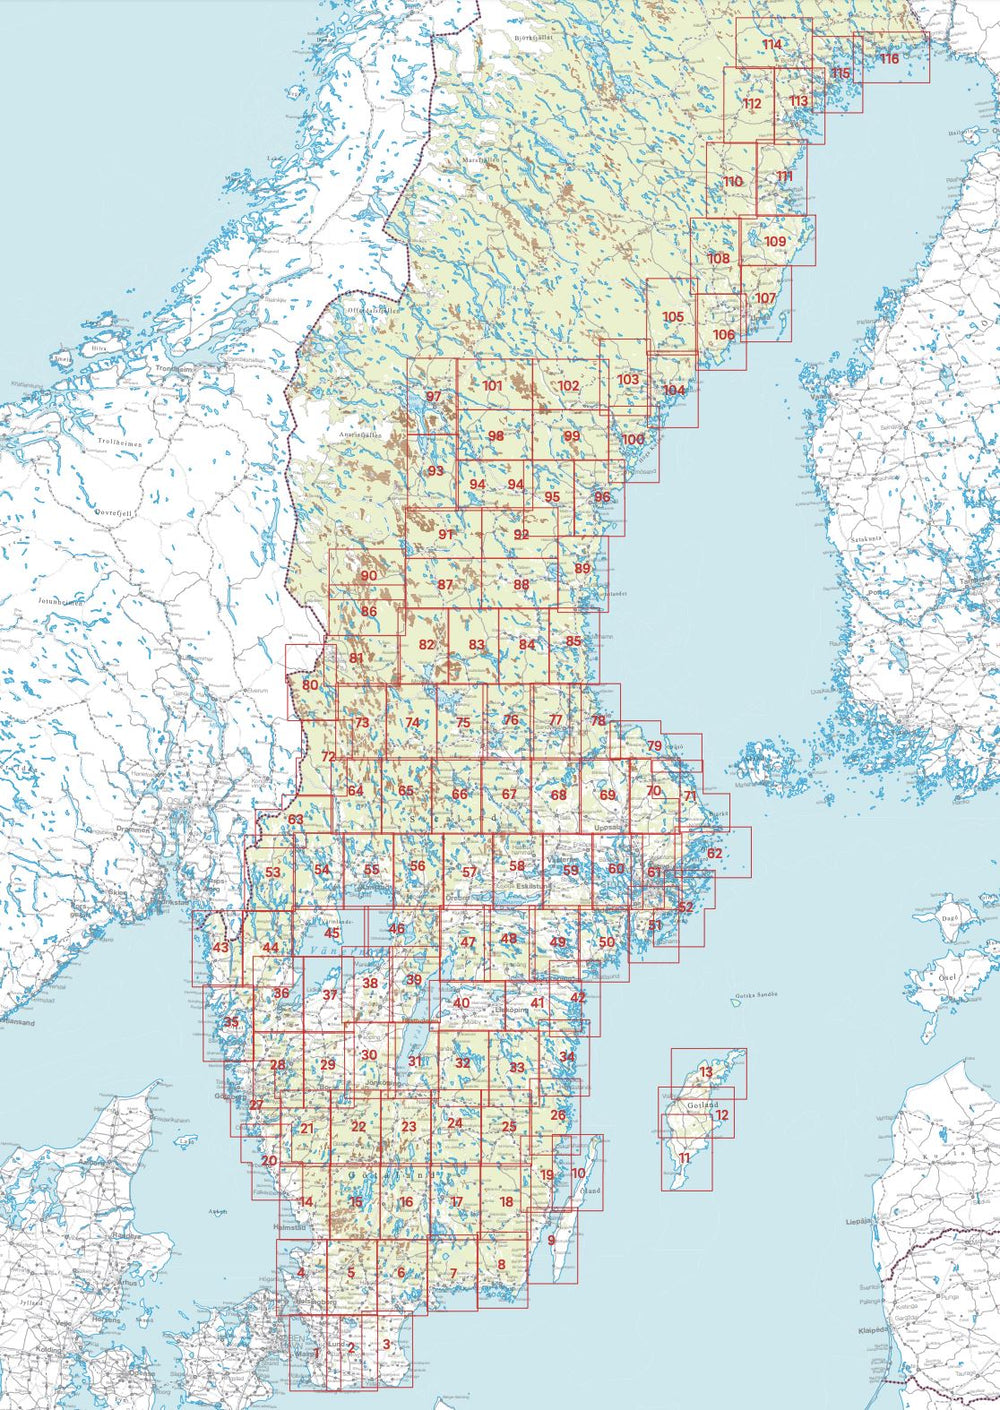 Carte topographique n° 71 - Hallstavik (Suède) | Norstedts - Sverigeserien carte pliée Norstedts 